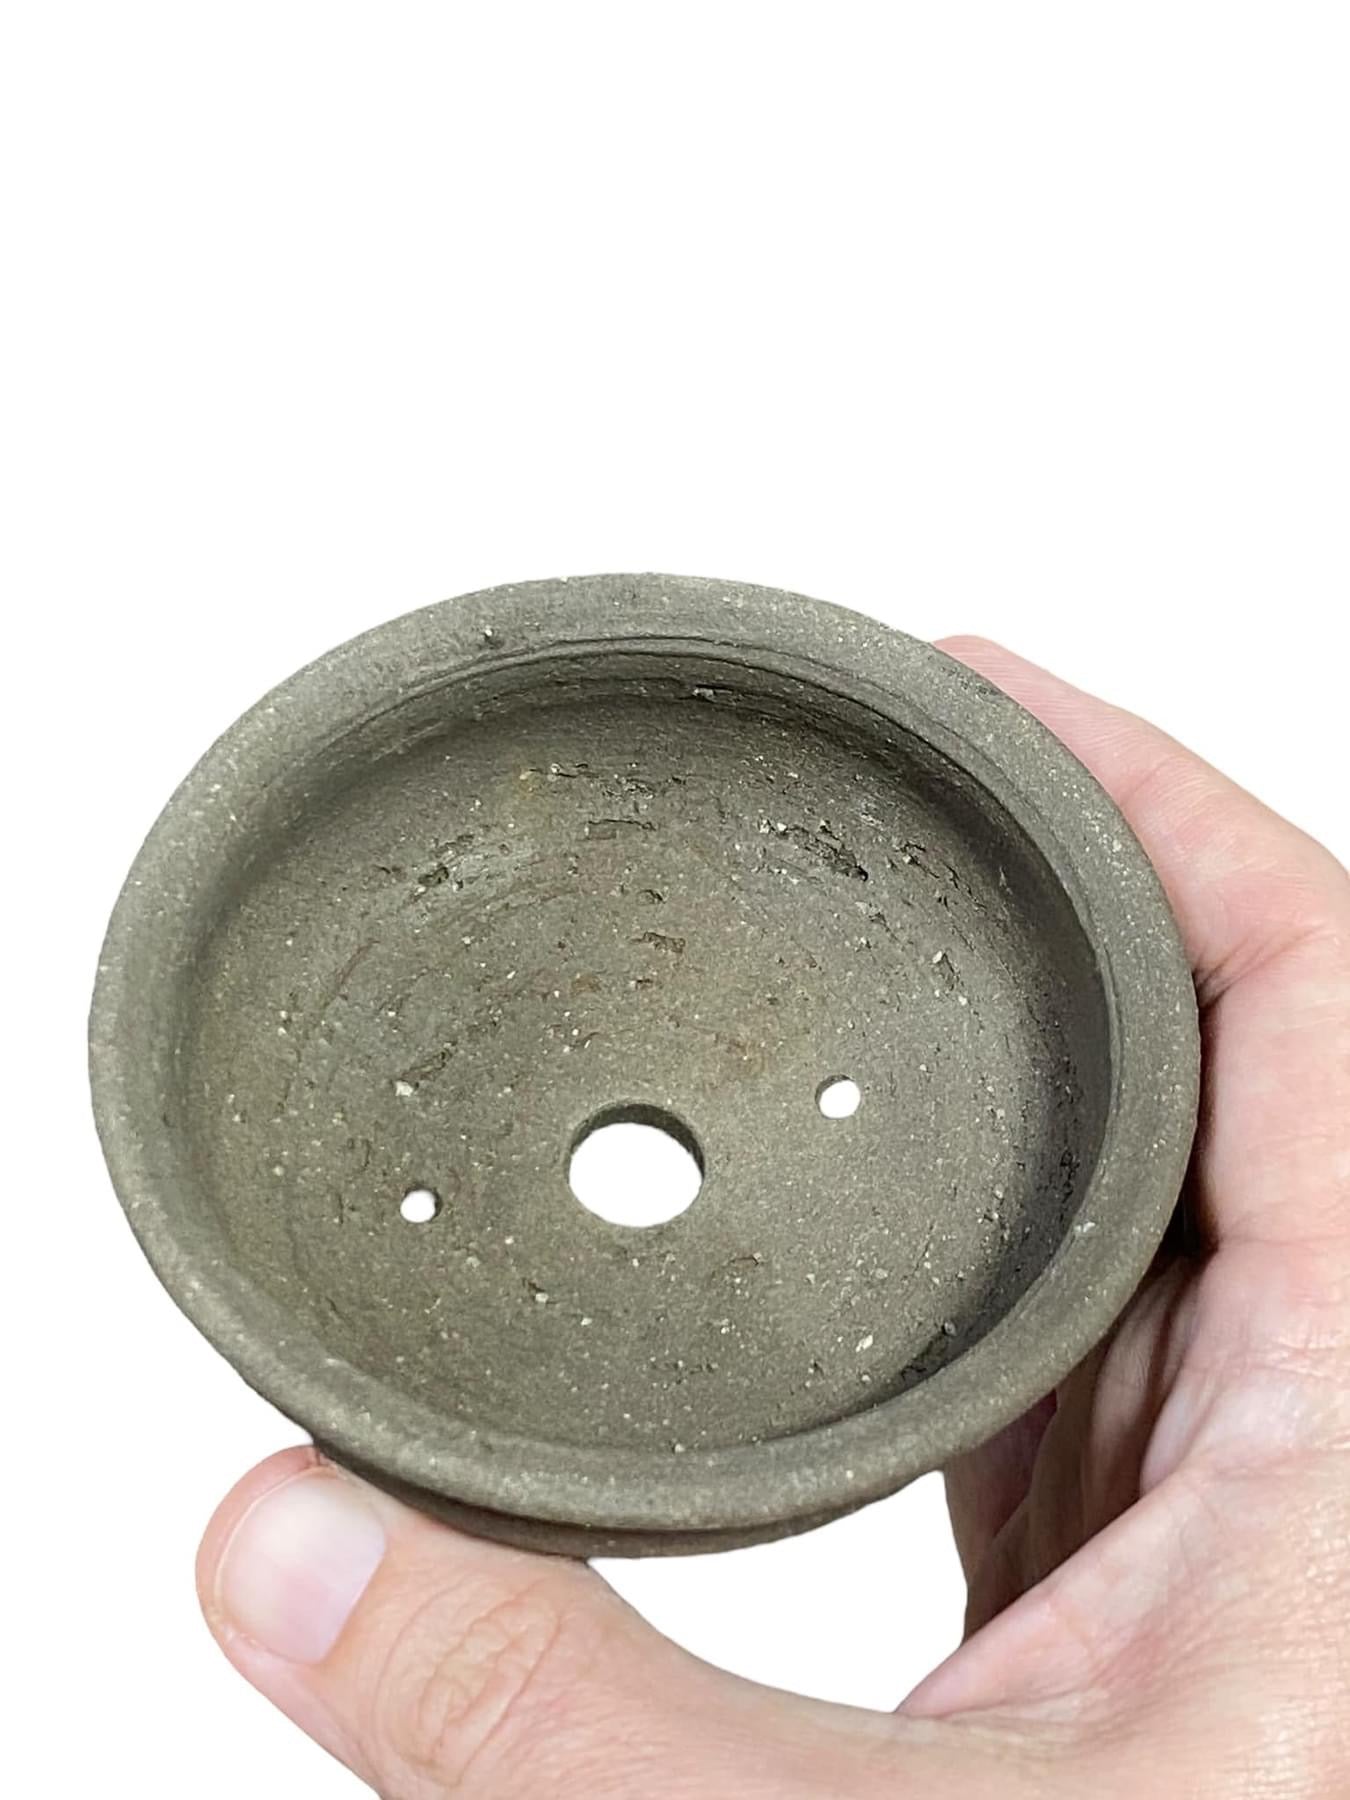 Heian Kosen - Old Unglazed Round Bonsai Pot